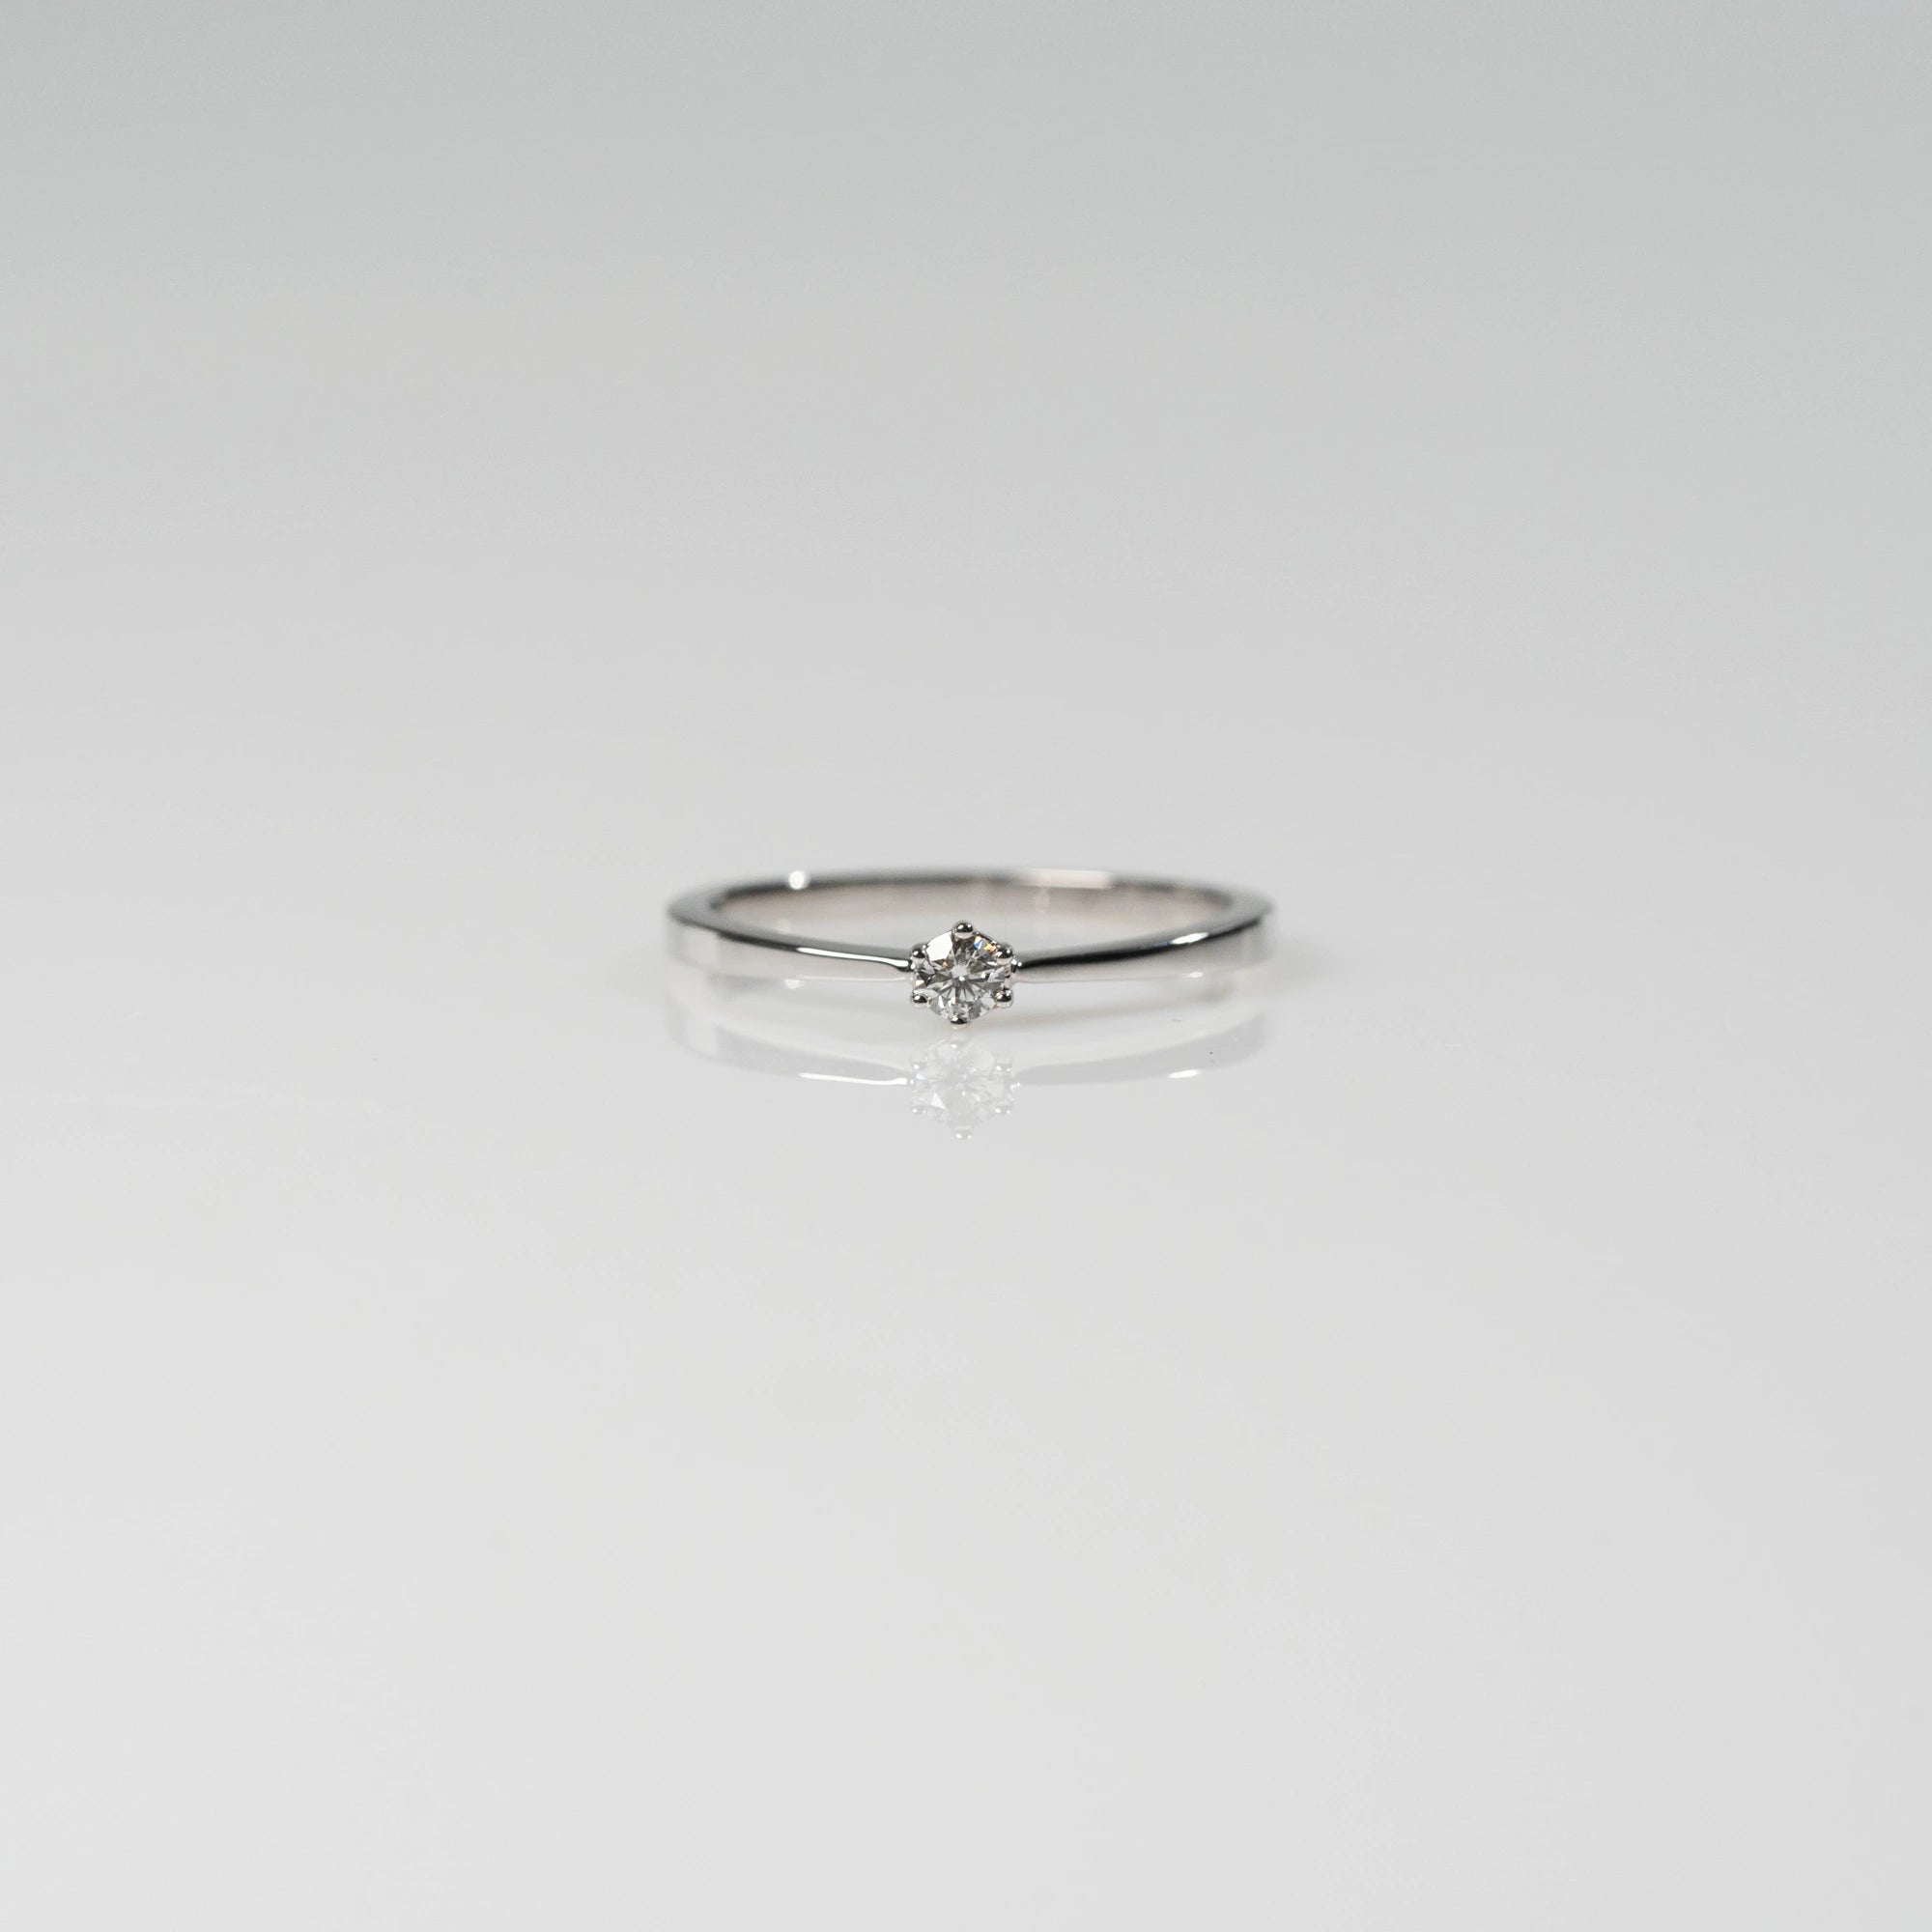 Frontale Ansicht des Verlobungsrings "Promise" aus der Schmuckatelier Lang Collection mit einem in einer 6er Kappe gefassten Diamanten